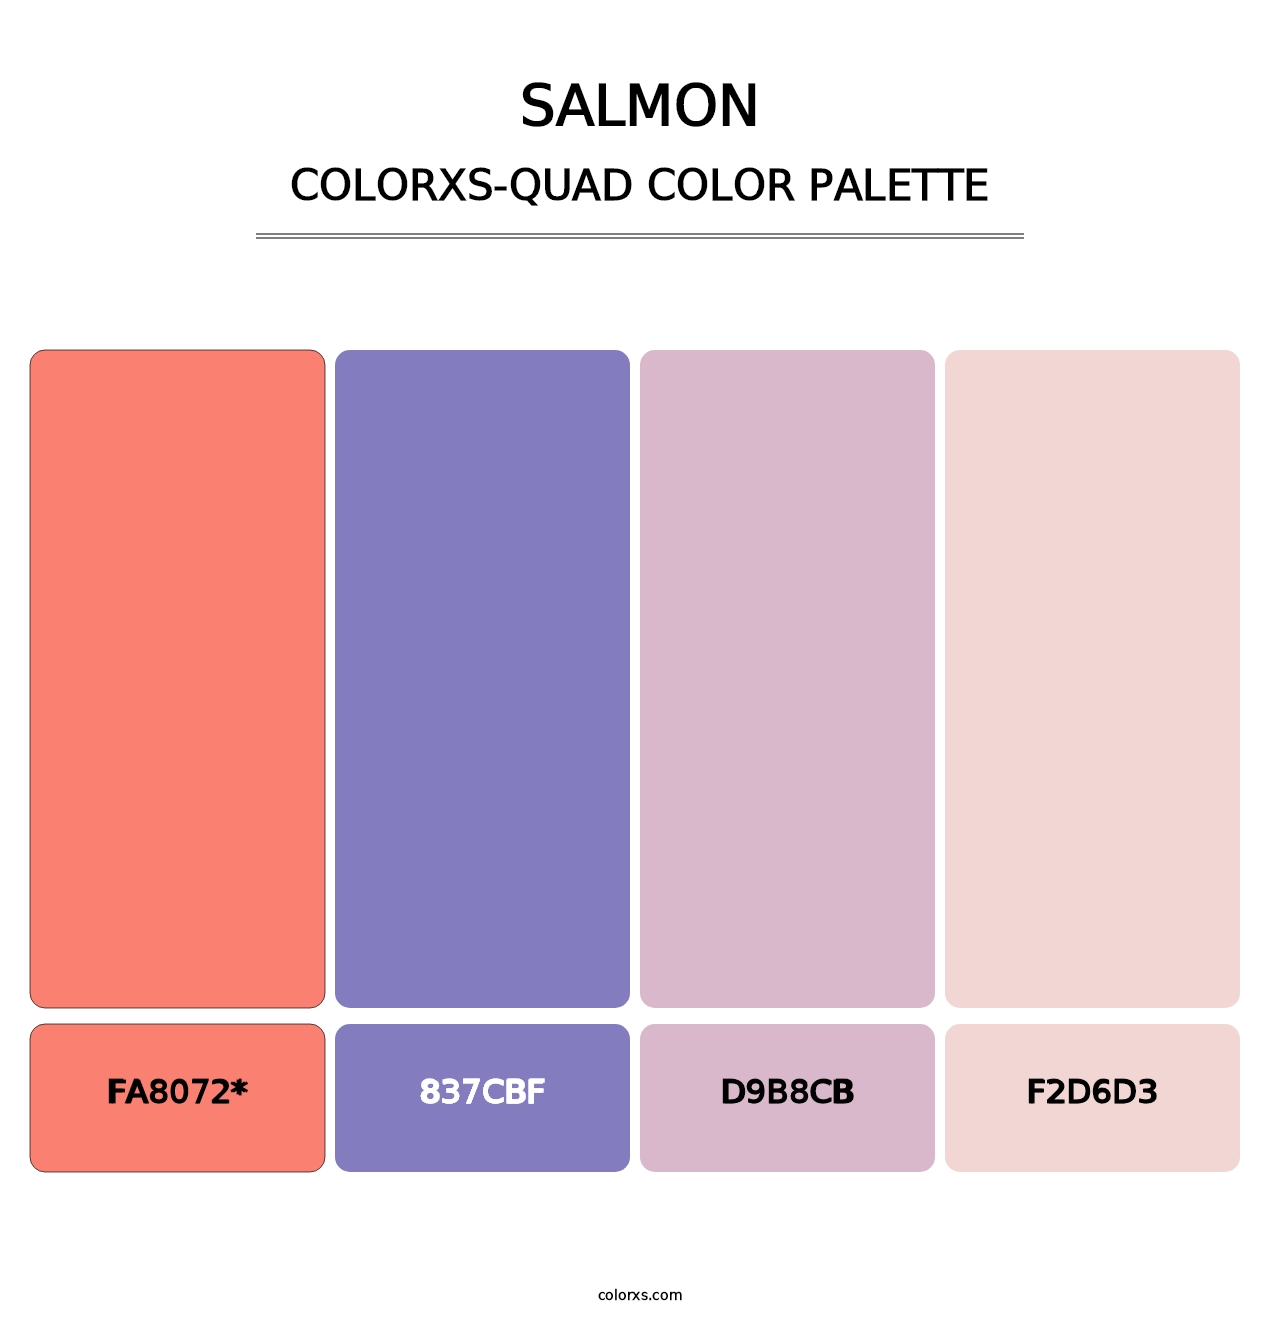 Salmon - Colorxs Quad Palette